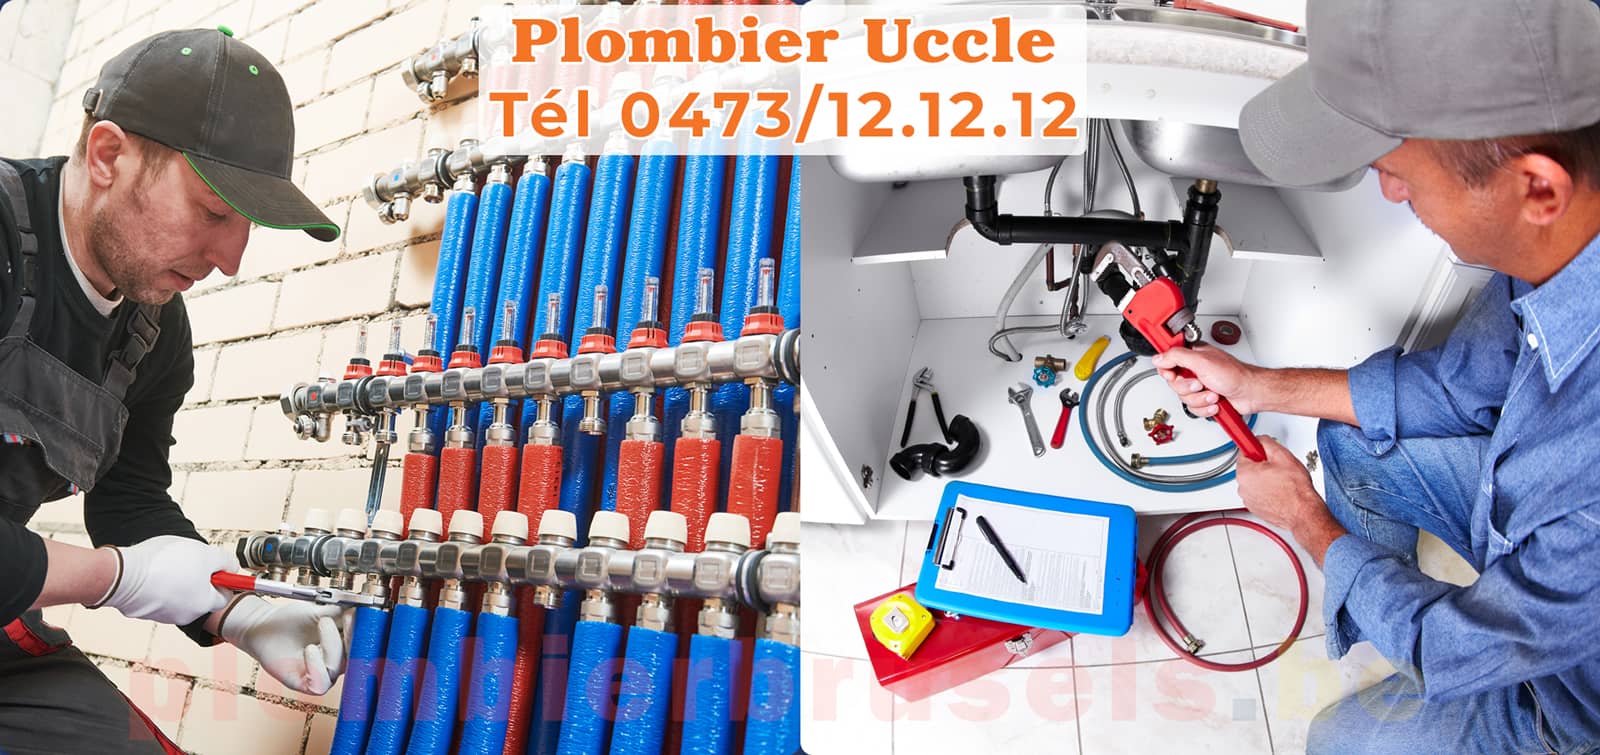 Plombier Uccle service de Plomberie tél 0473/12.12.12